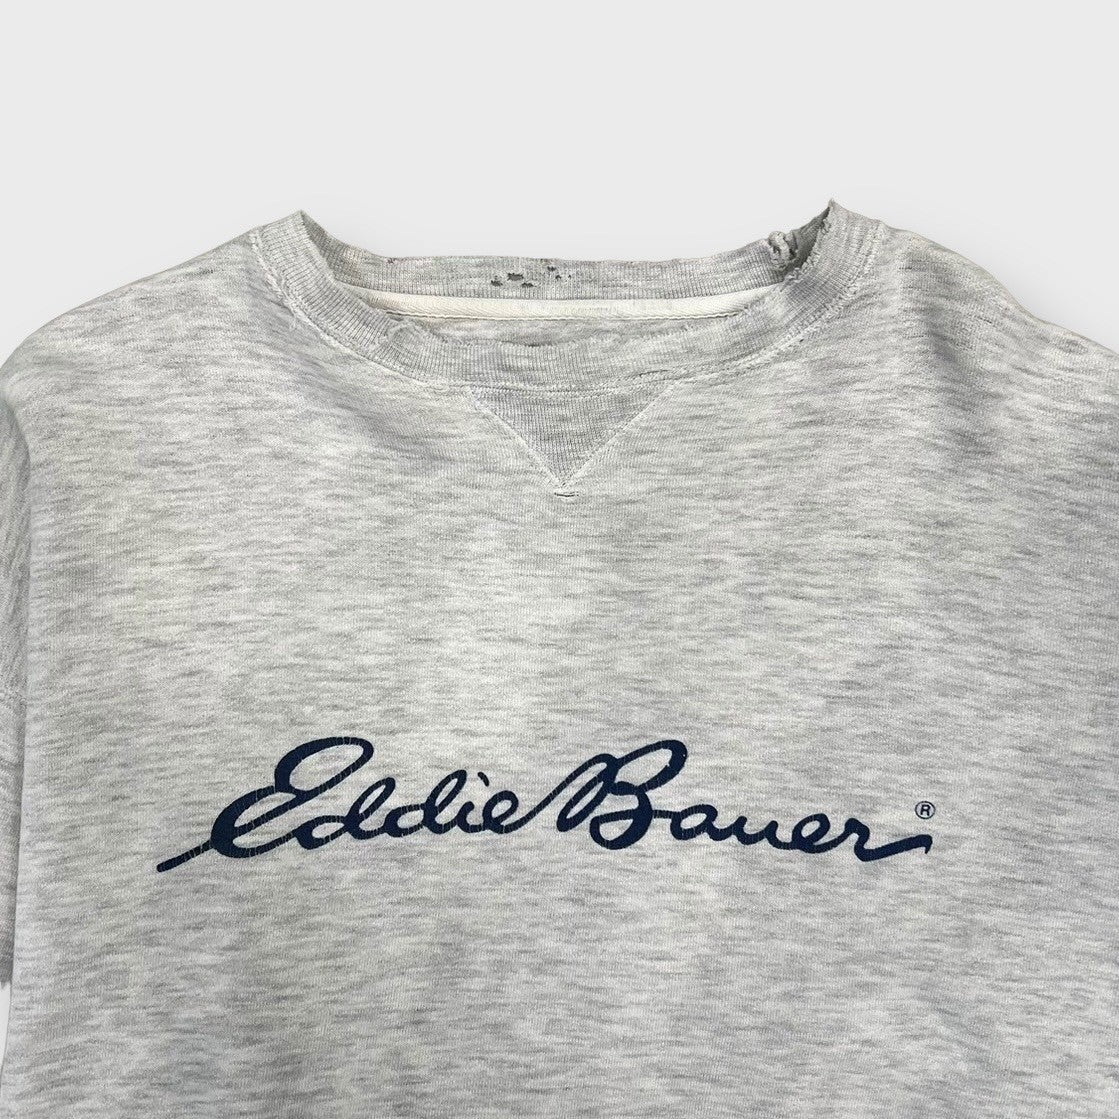 90's "Eddie Bauer"
Logo sweat